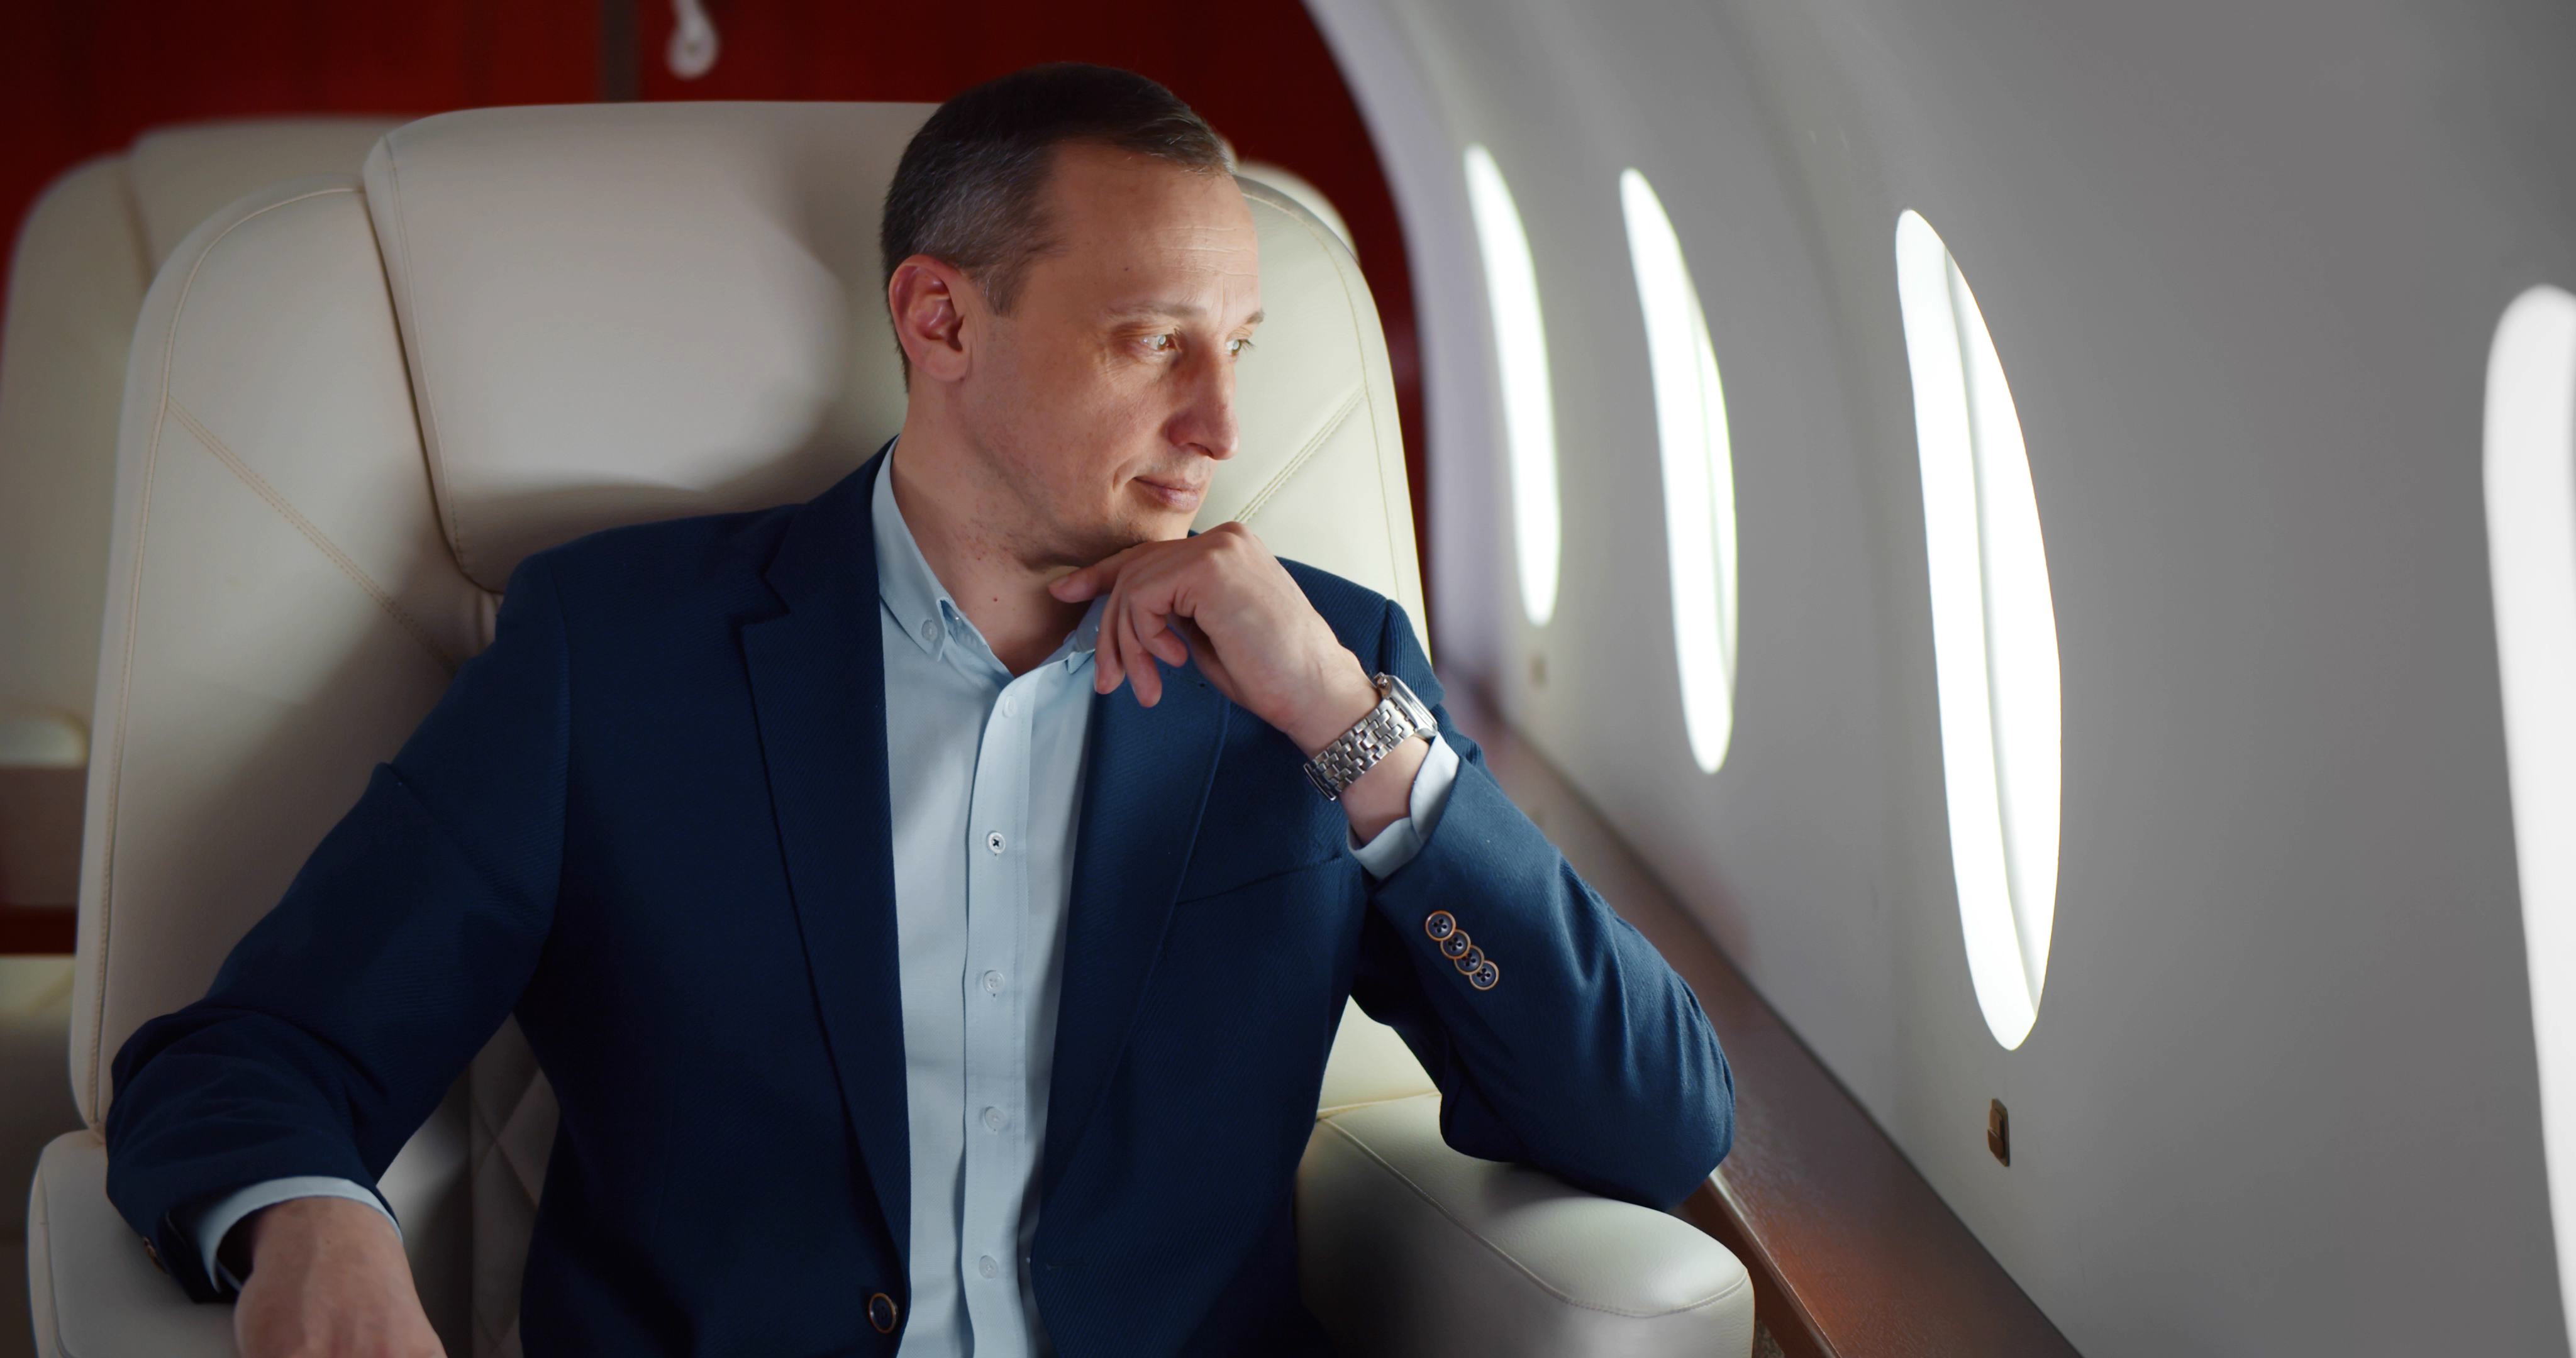 Un homme d'affaires en costume est photographié sur un vol en première classe | Source : Shutterstock